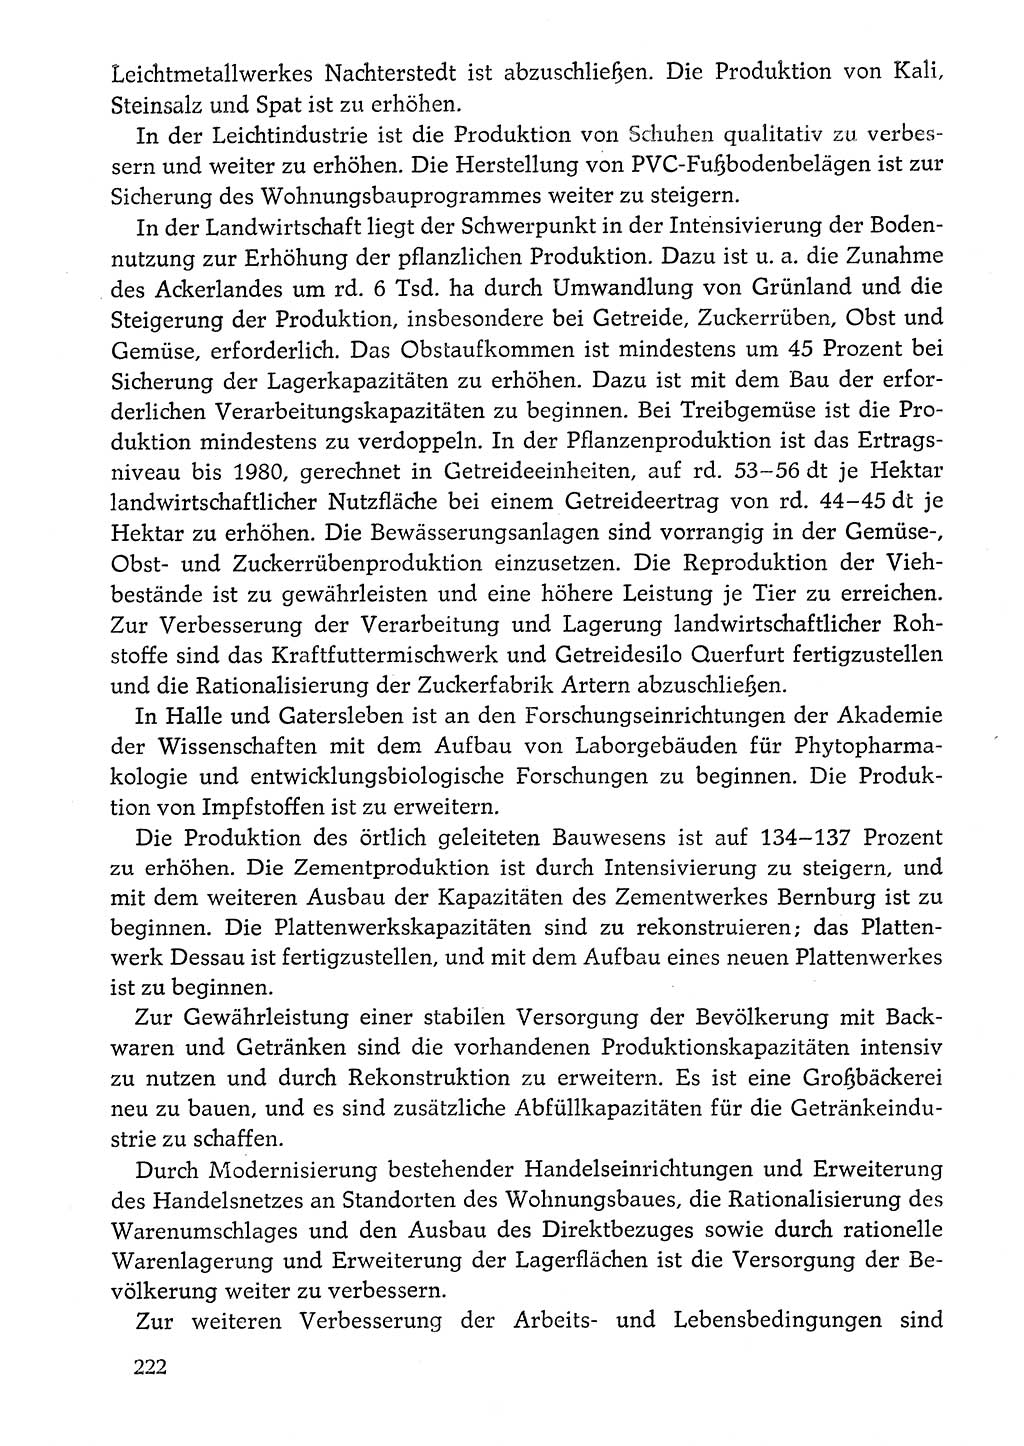 Dokumente der Sozialistischen Einheitspartei Deutschlands (SED) [Deutsche Demokratische Republik (DDR)] 1976-1977, Seite 222 (Dok. SED DDR 1976-1977, S. 222)